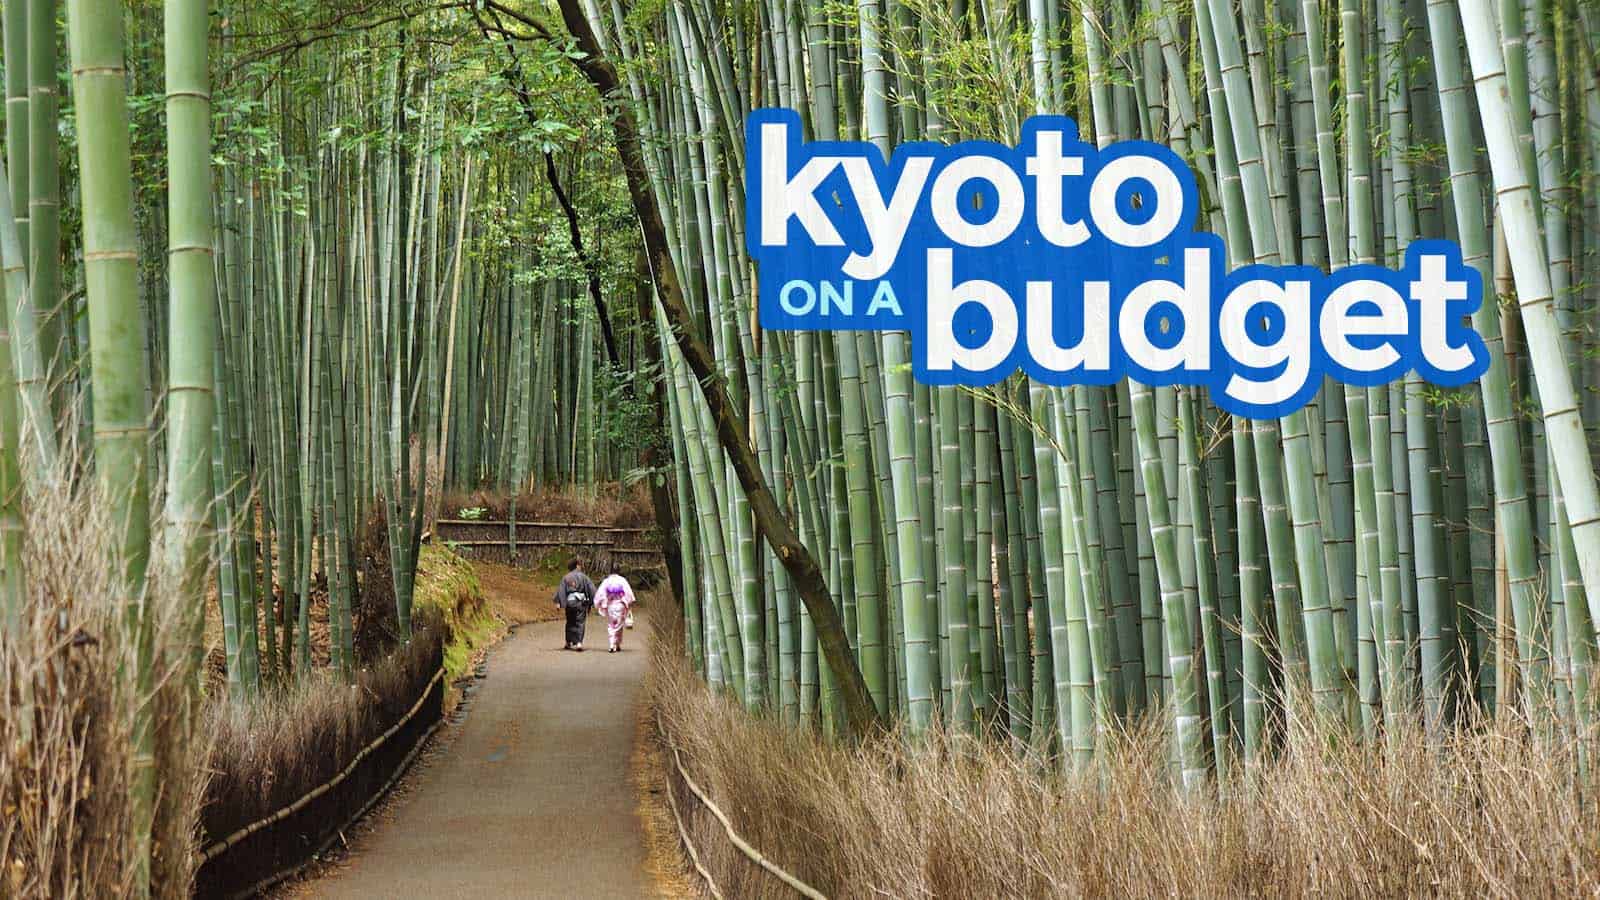 京都旅游指南:预算内行程，要做的事